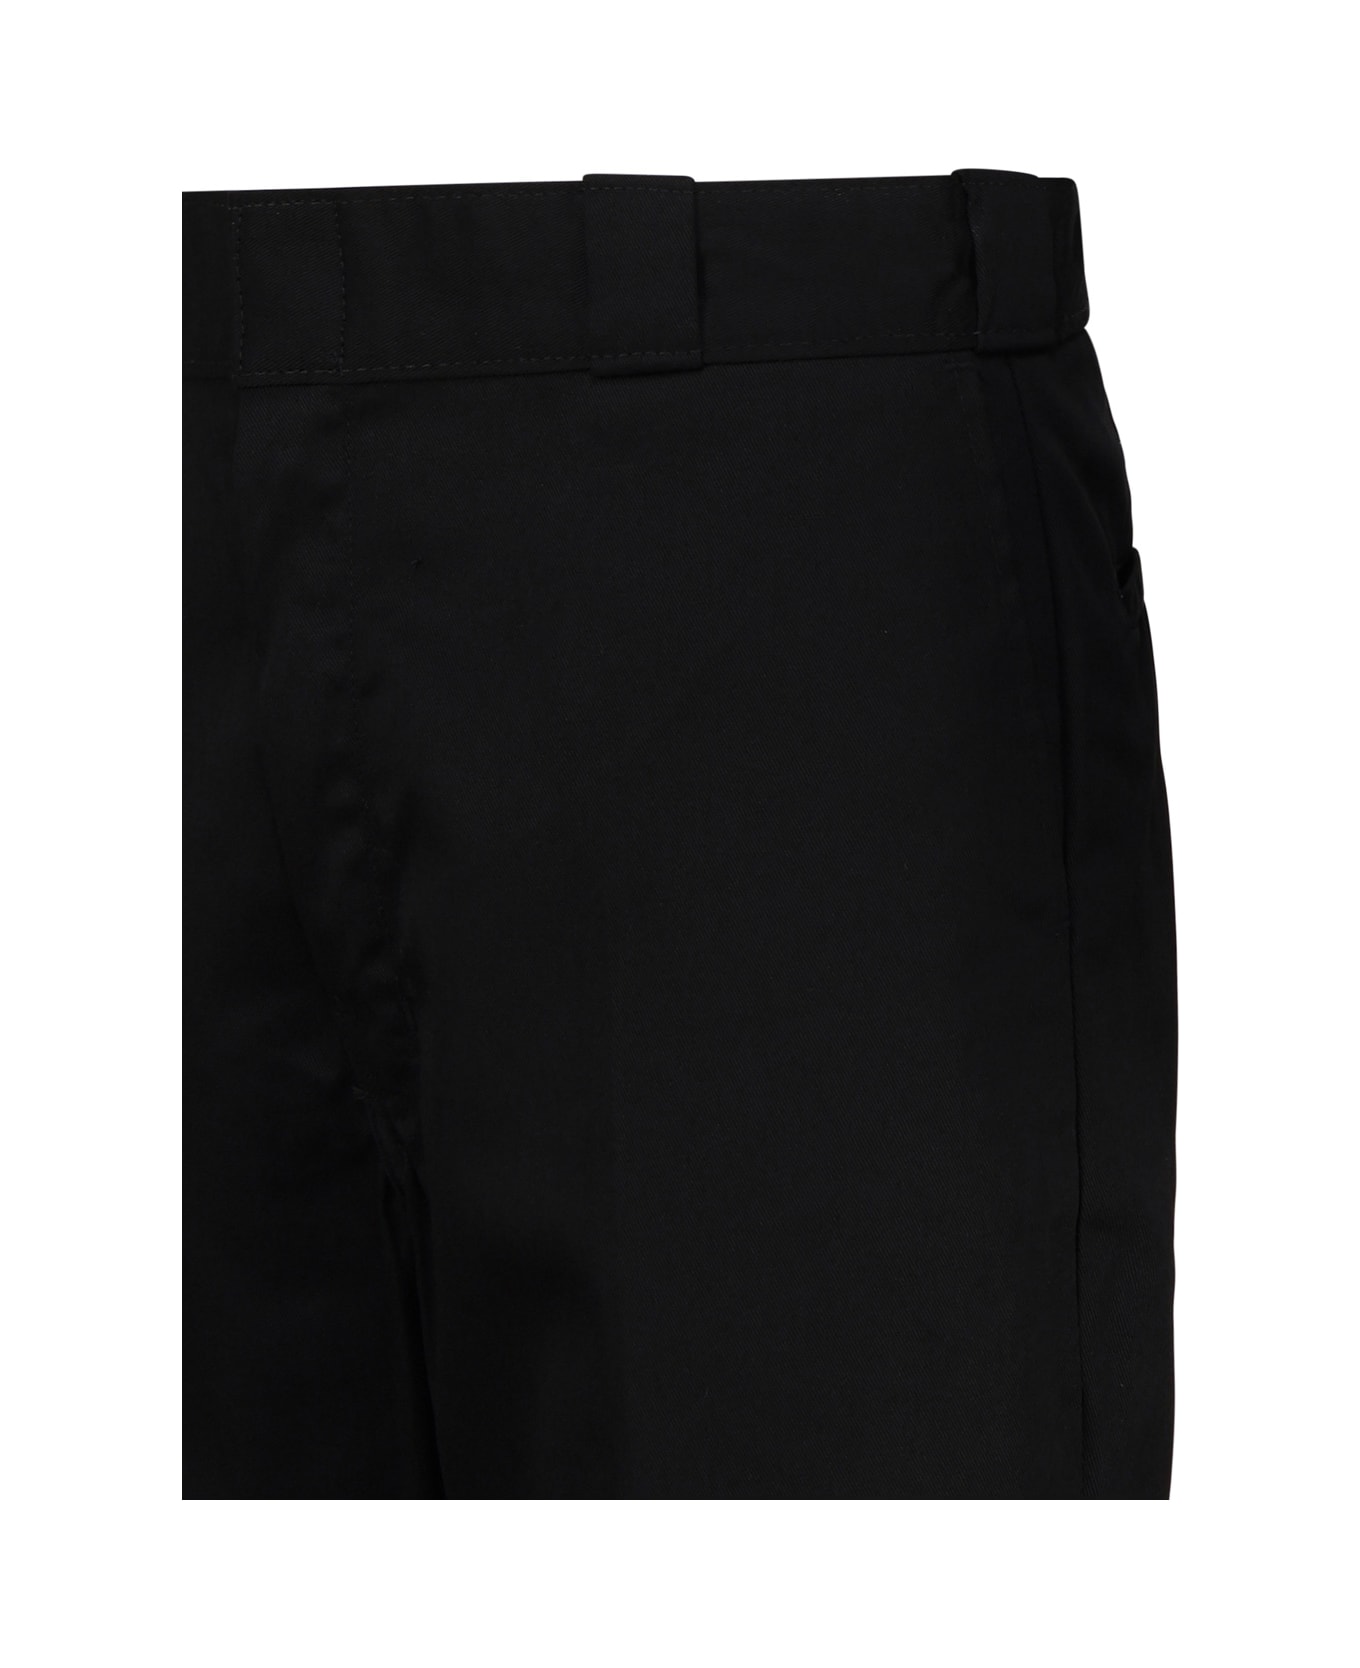 Dickies Work Trousers 874 - Black